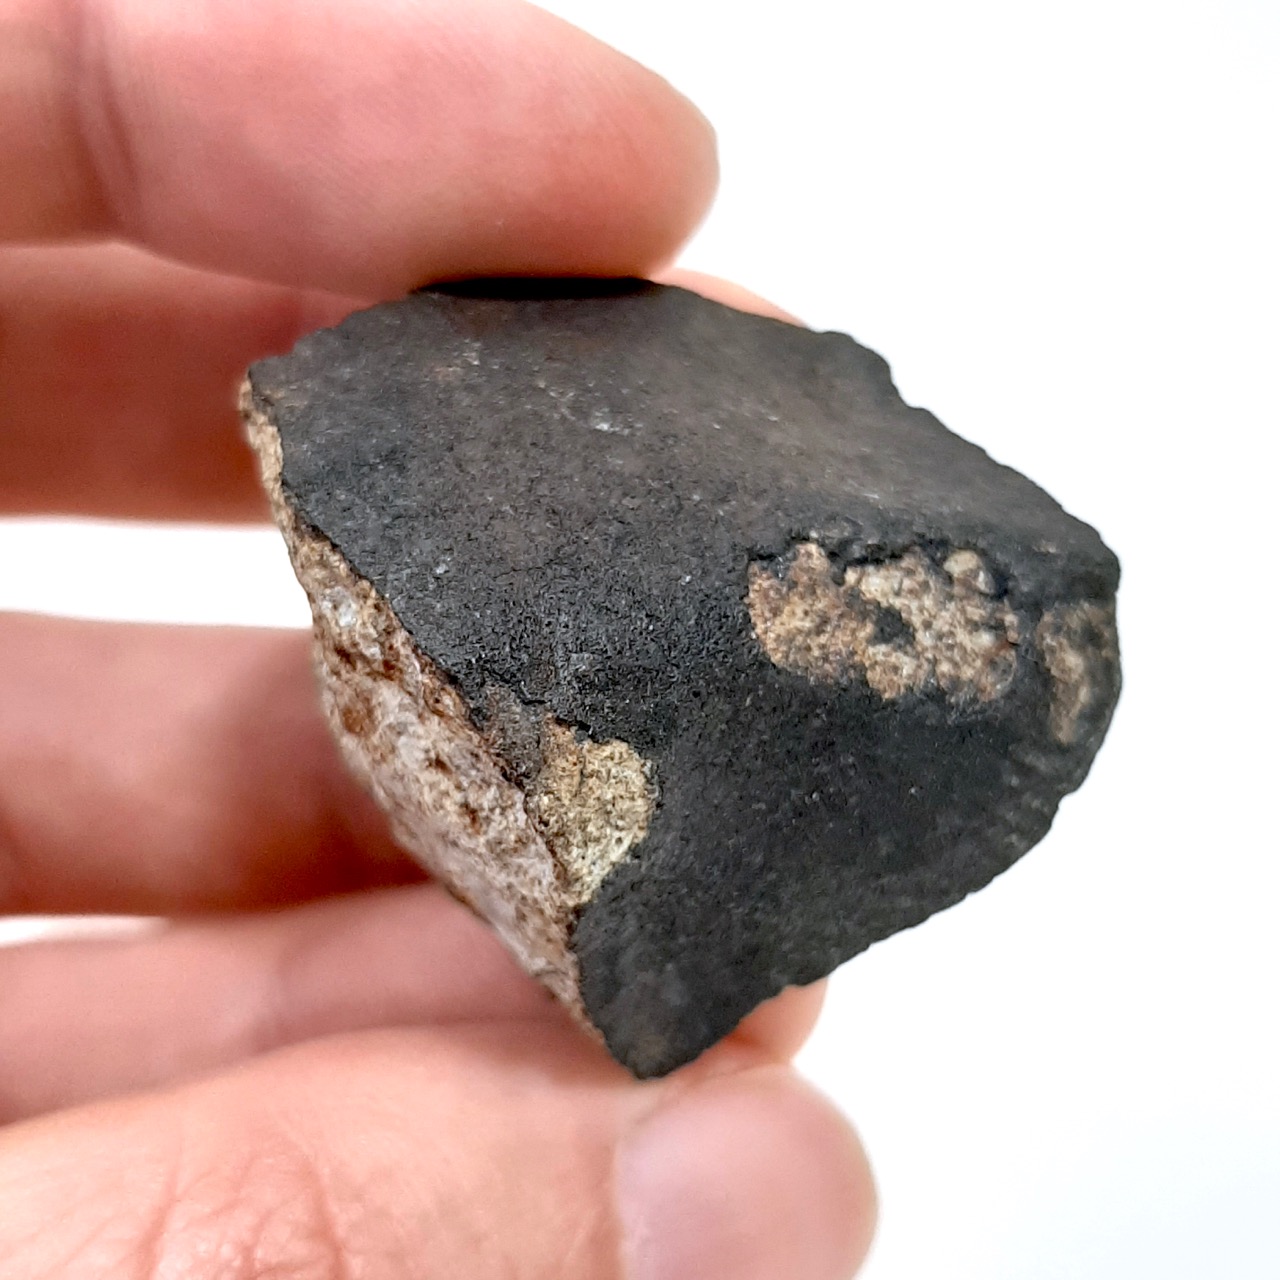 Viñales meteorite. L6 chondrite.